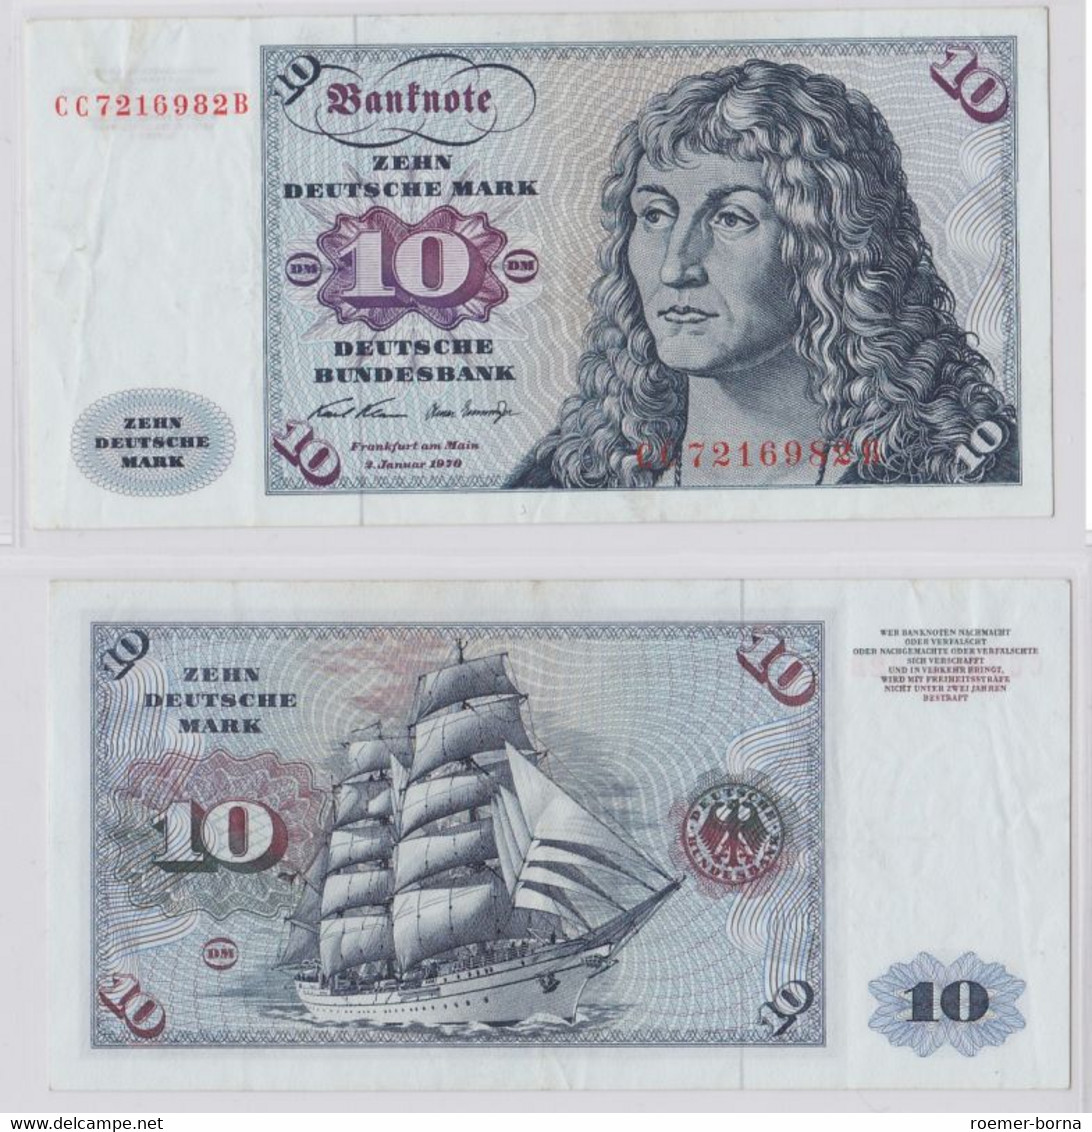 T146002 Banknote 10 DM Deutsche Mark Ro. 270a Schein 2.Jan. 1970 KN CC 7216982 B - 10 DM